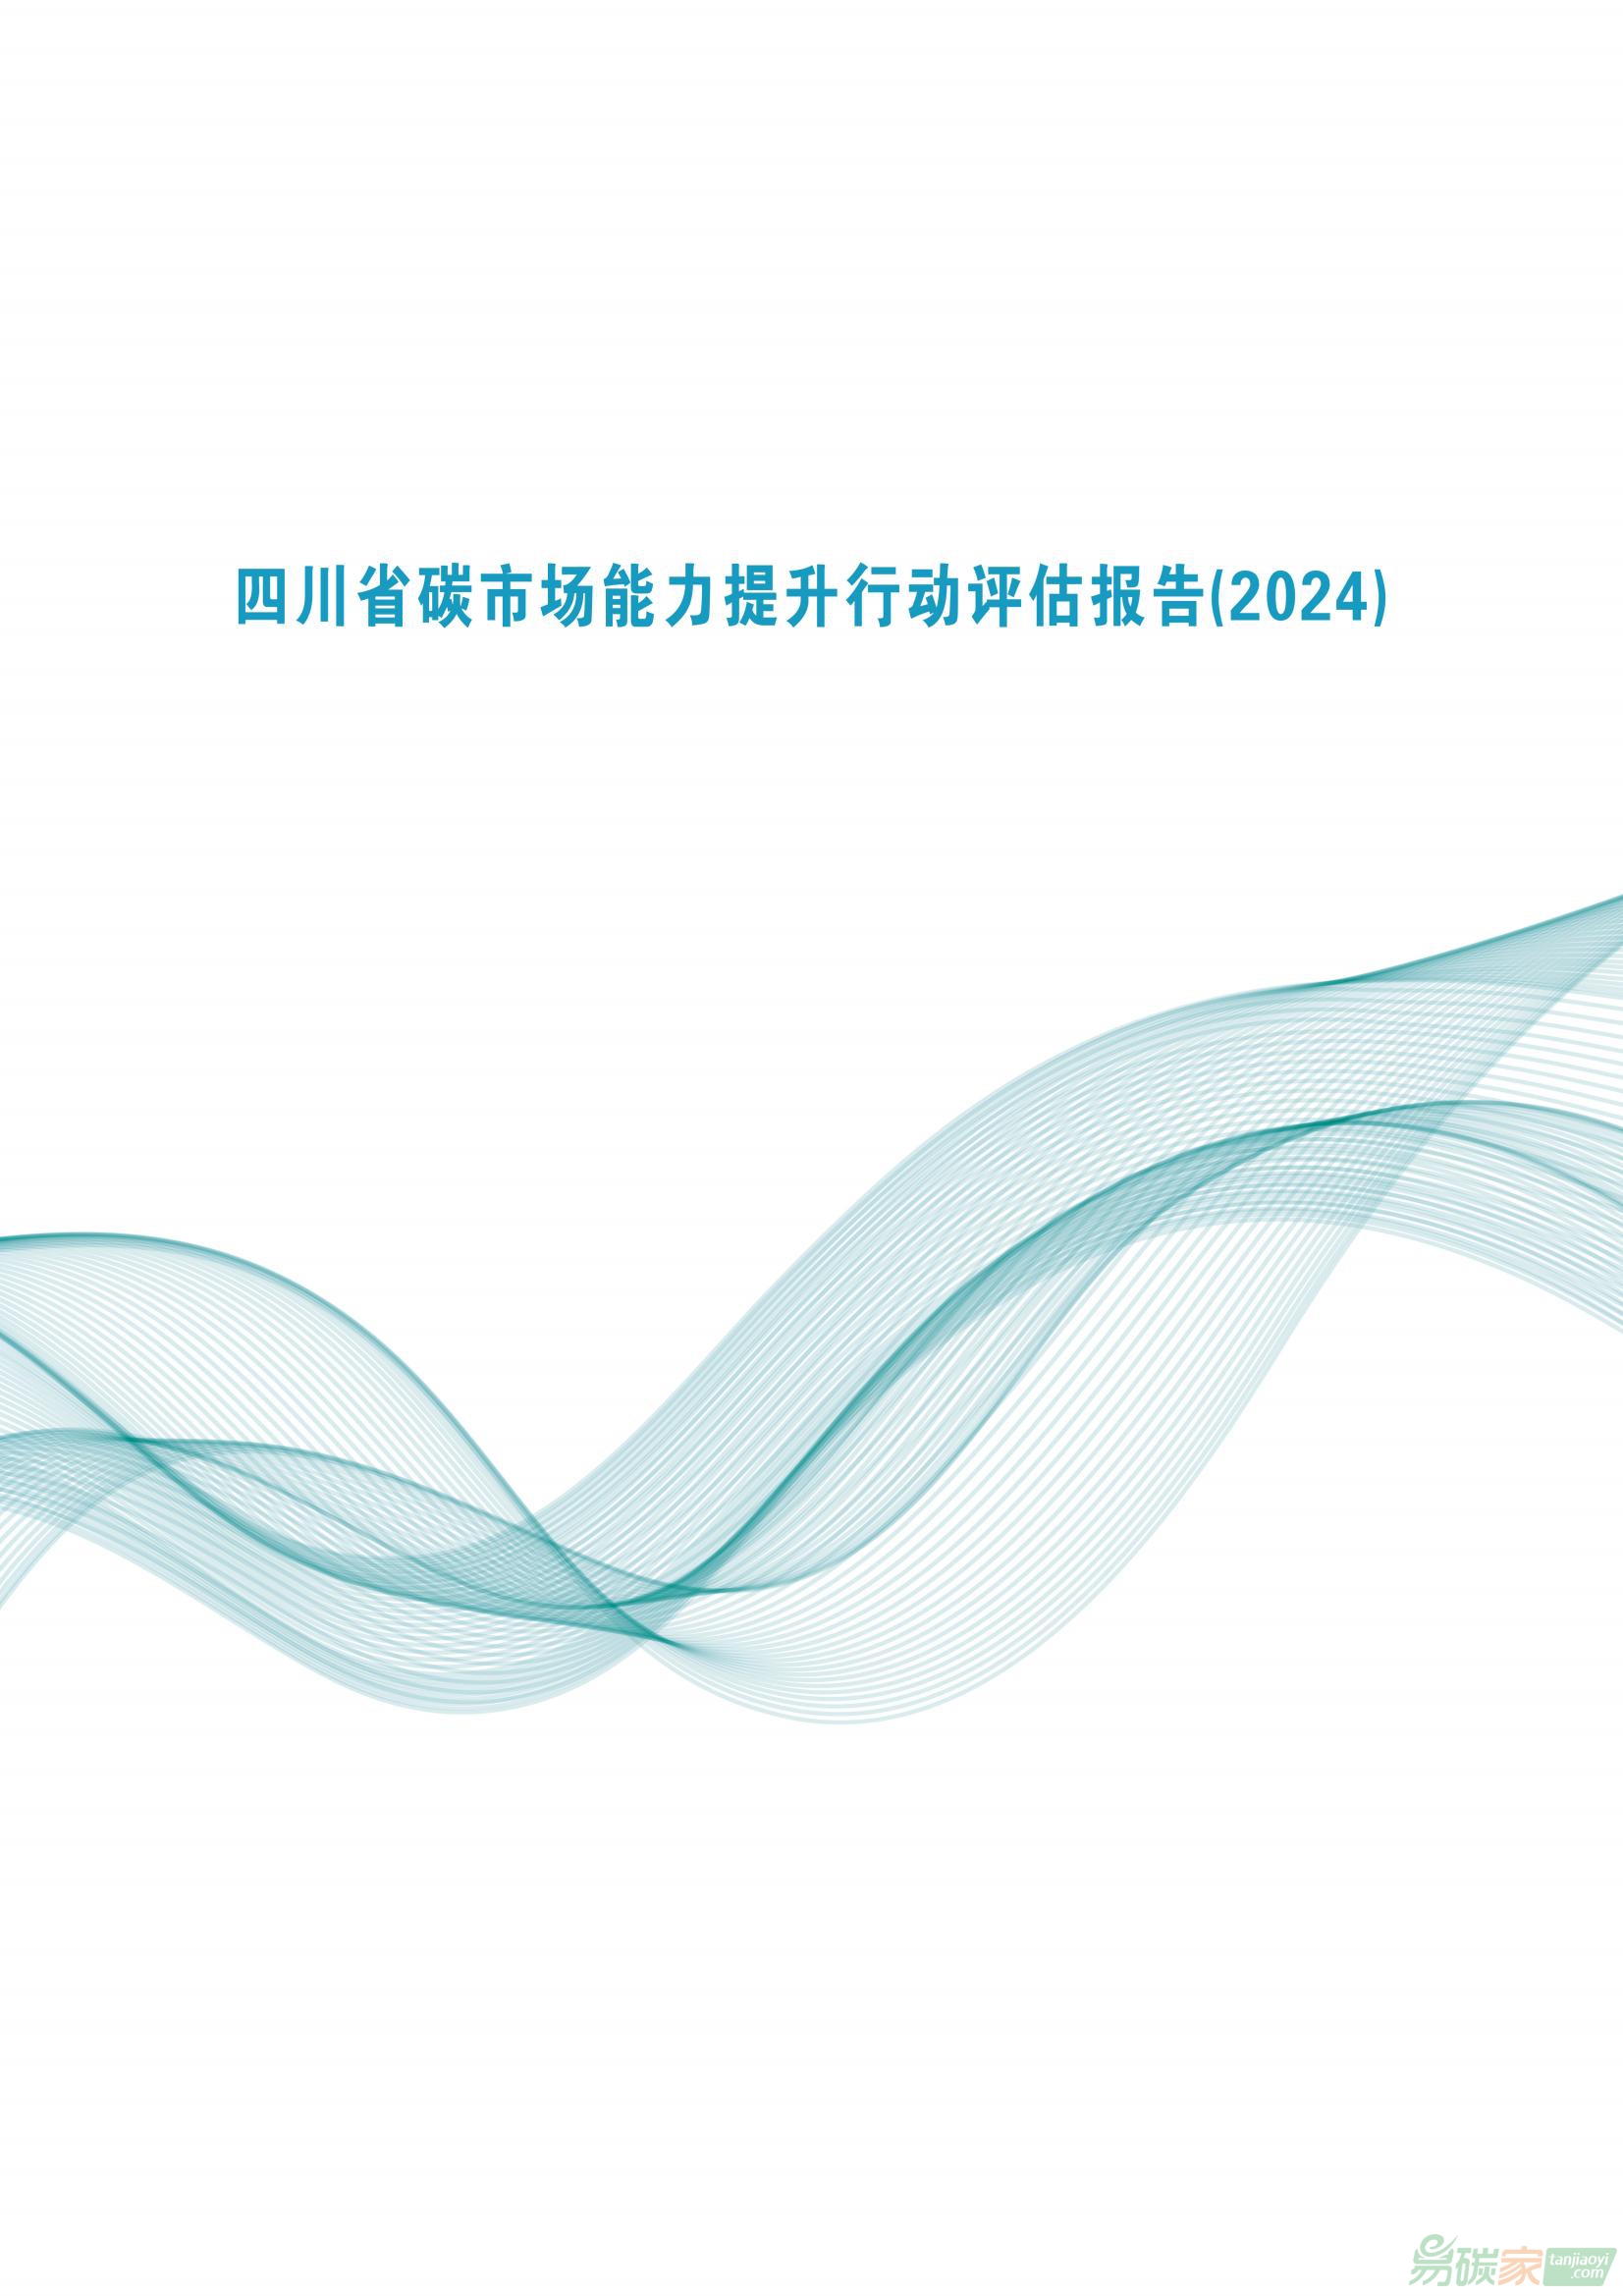 《四川省碳威廉希尔体育能力提升行动评估报告（2024）》电子版全文